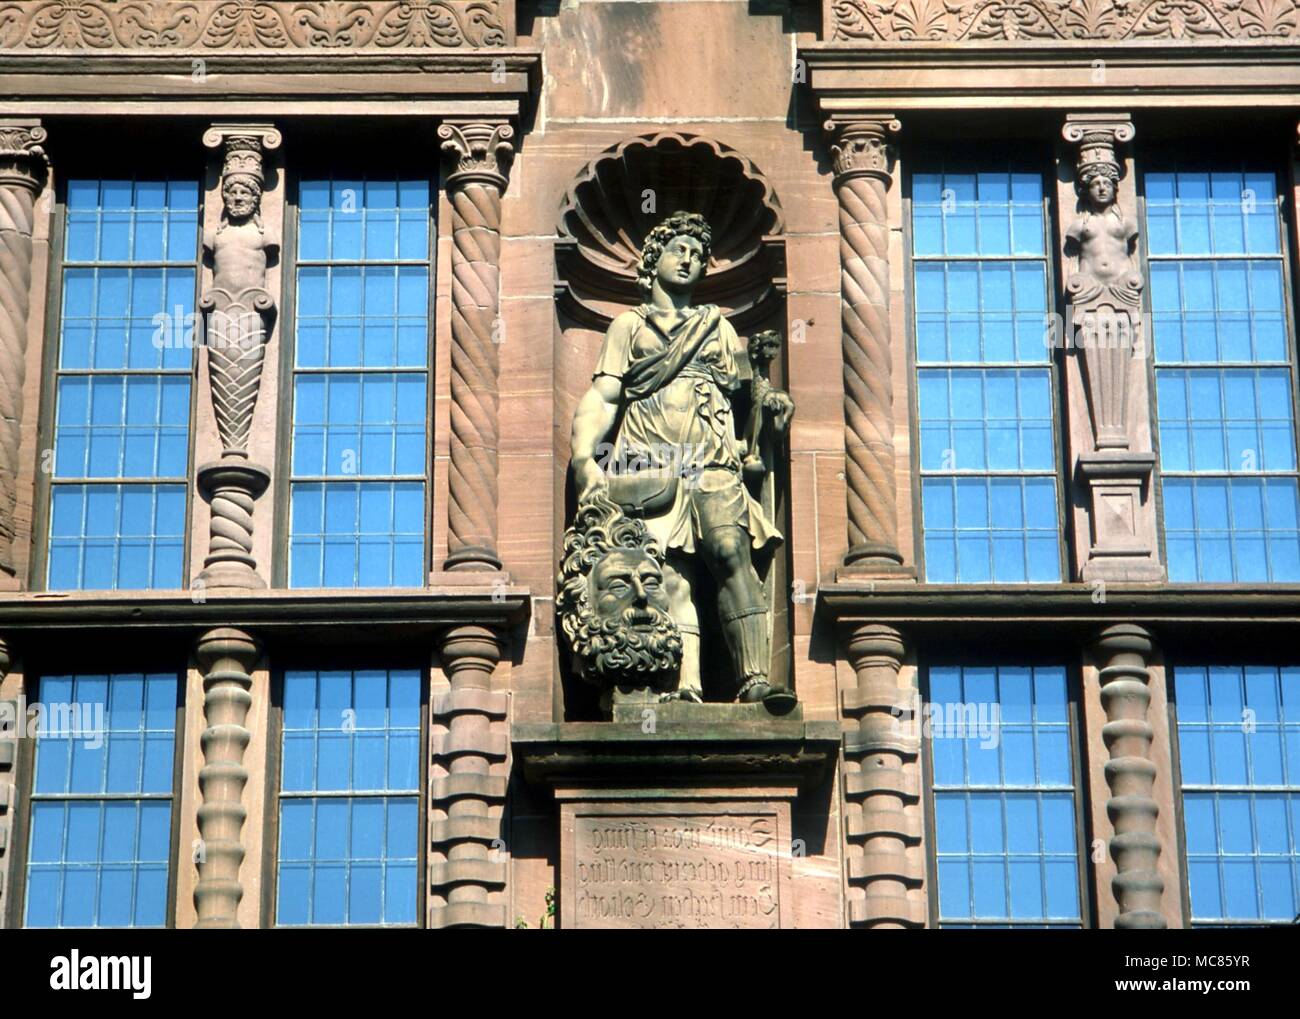 CHRISTIAN David mit dem Leiter der Goliath, und der Löwe - Symbol. Statue auf der Fassade der mittelalterlichen Burg in Heidelberg, Deutschland Stockfoto